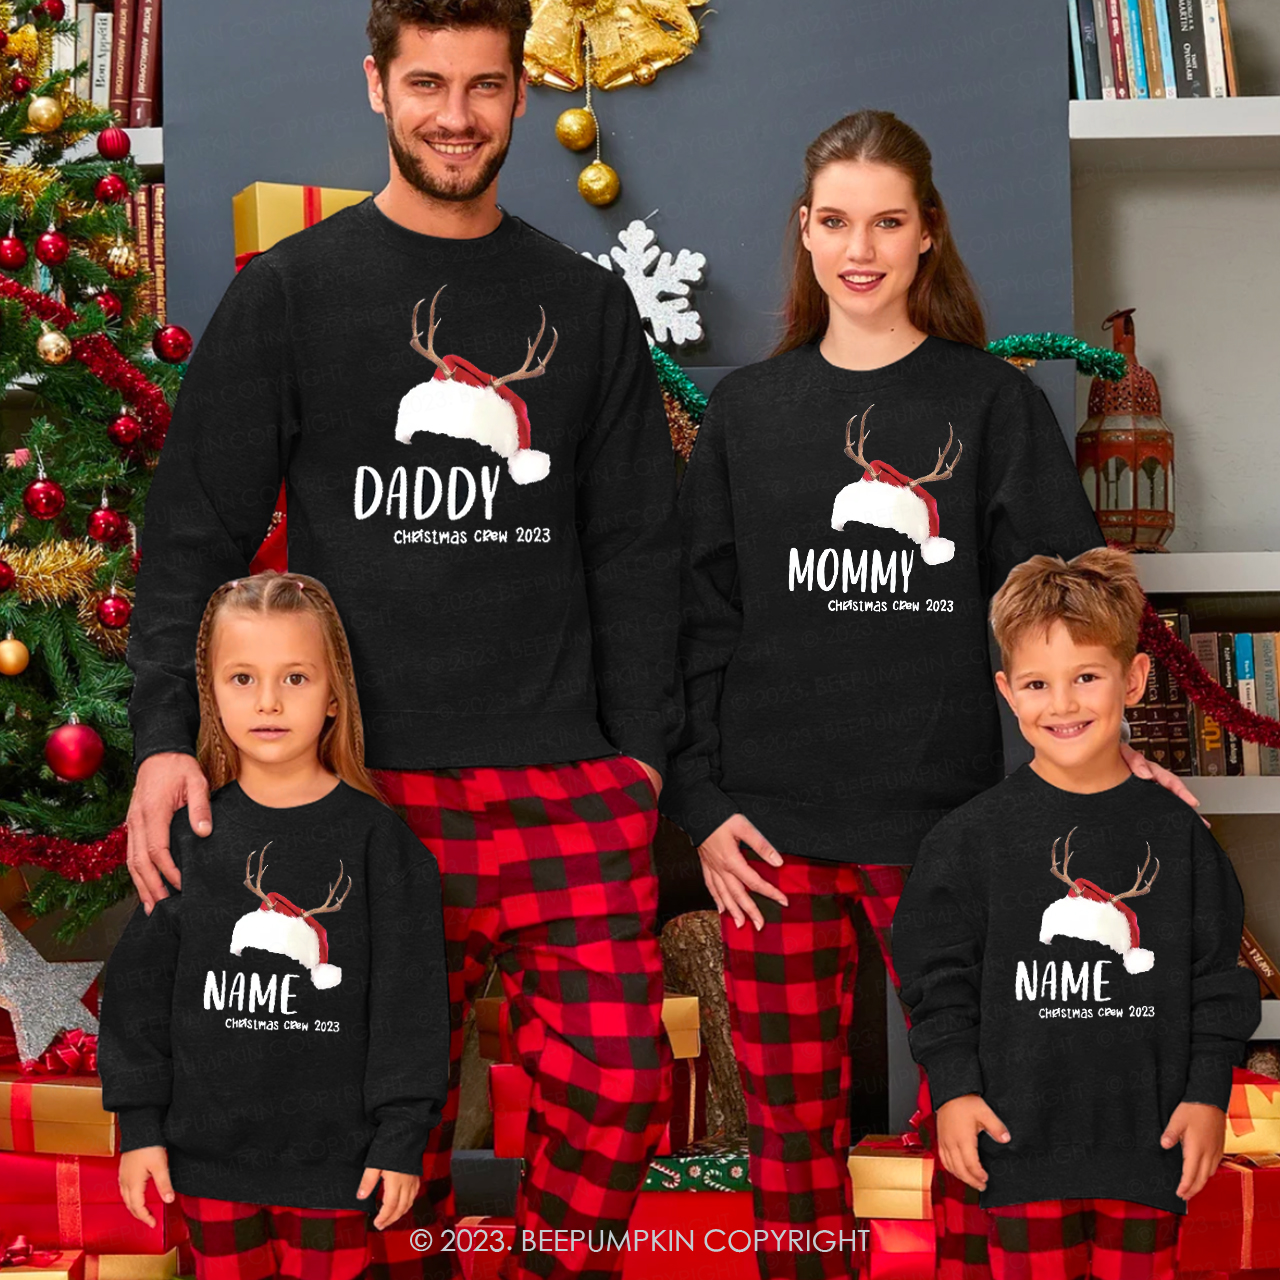 Personalized Reindeer Christmas Crew 2023 Family Sweatshirts